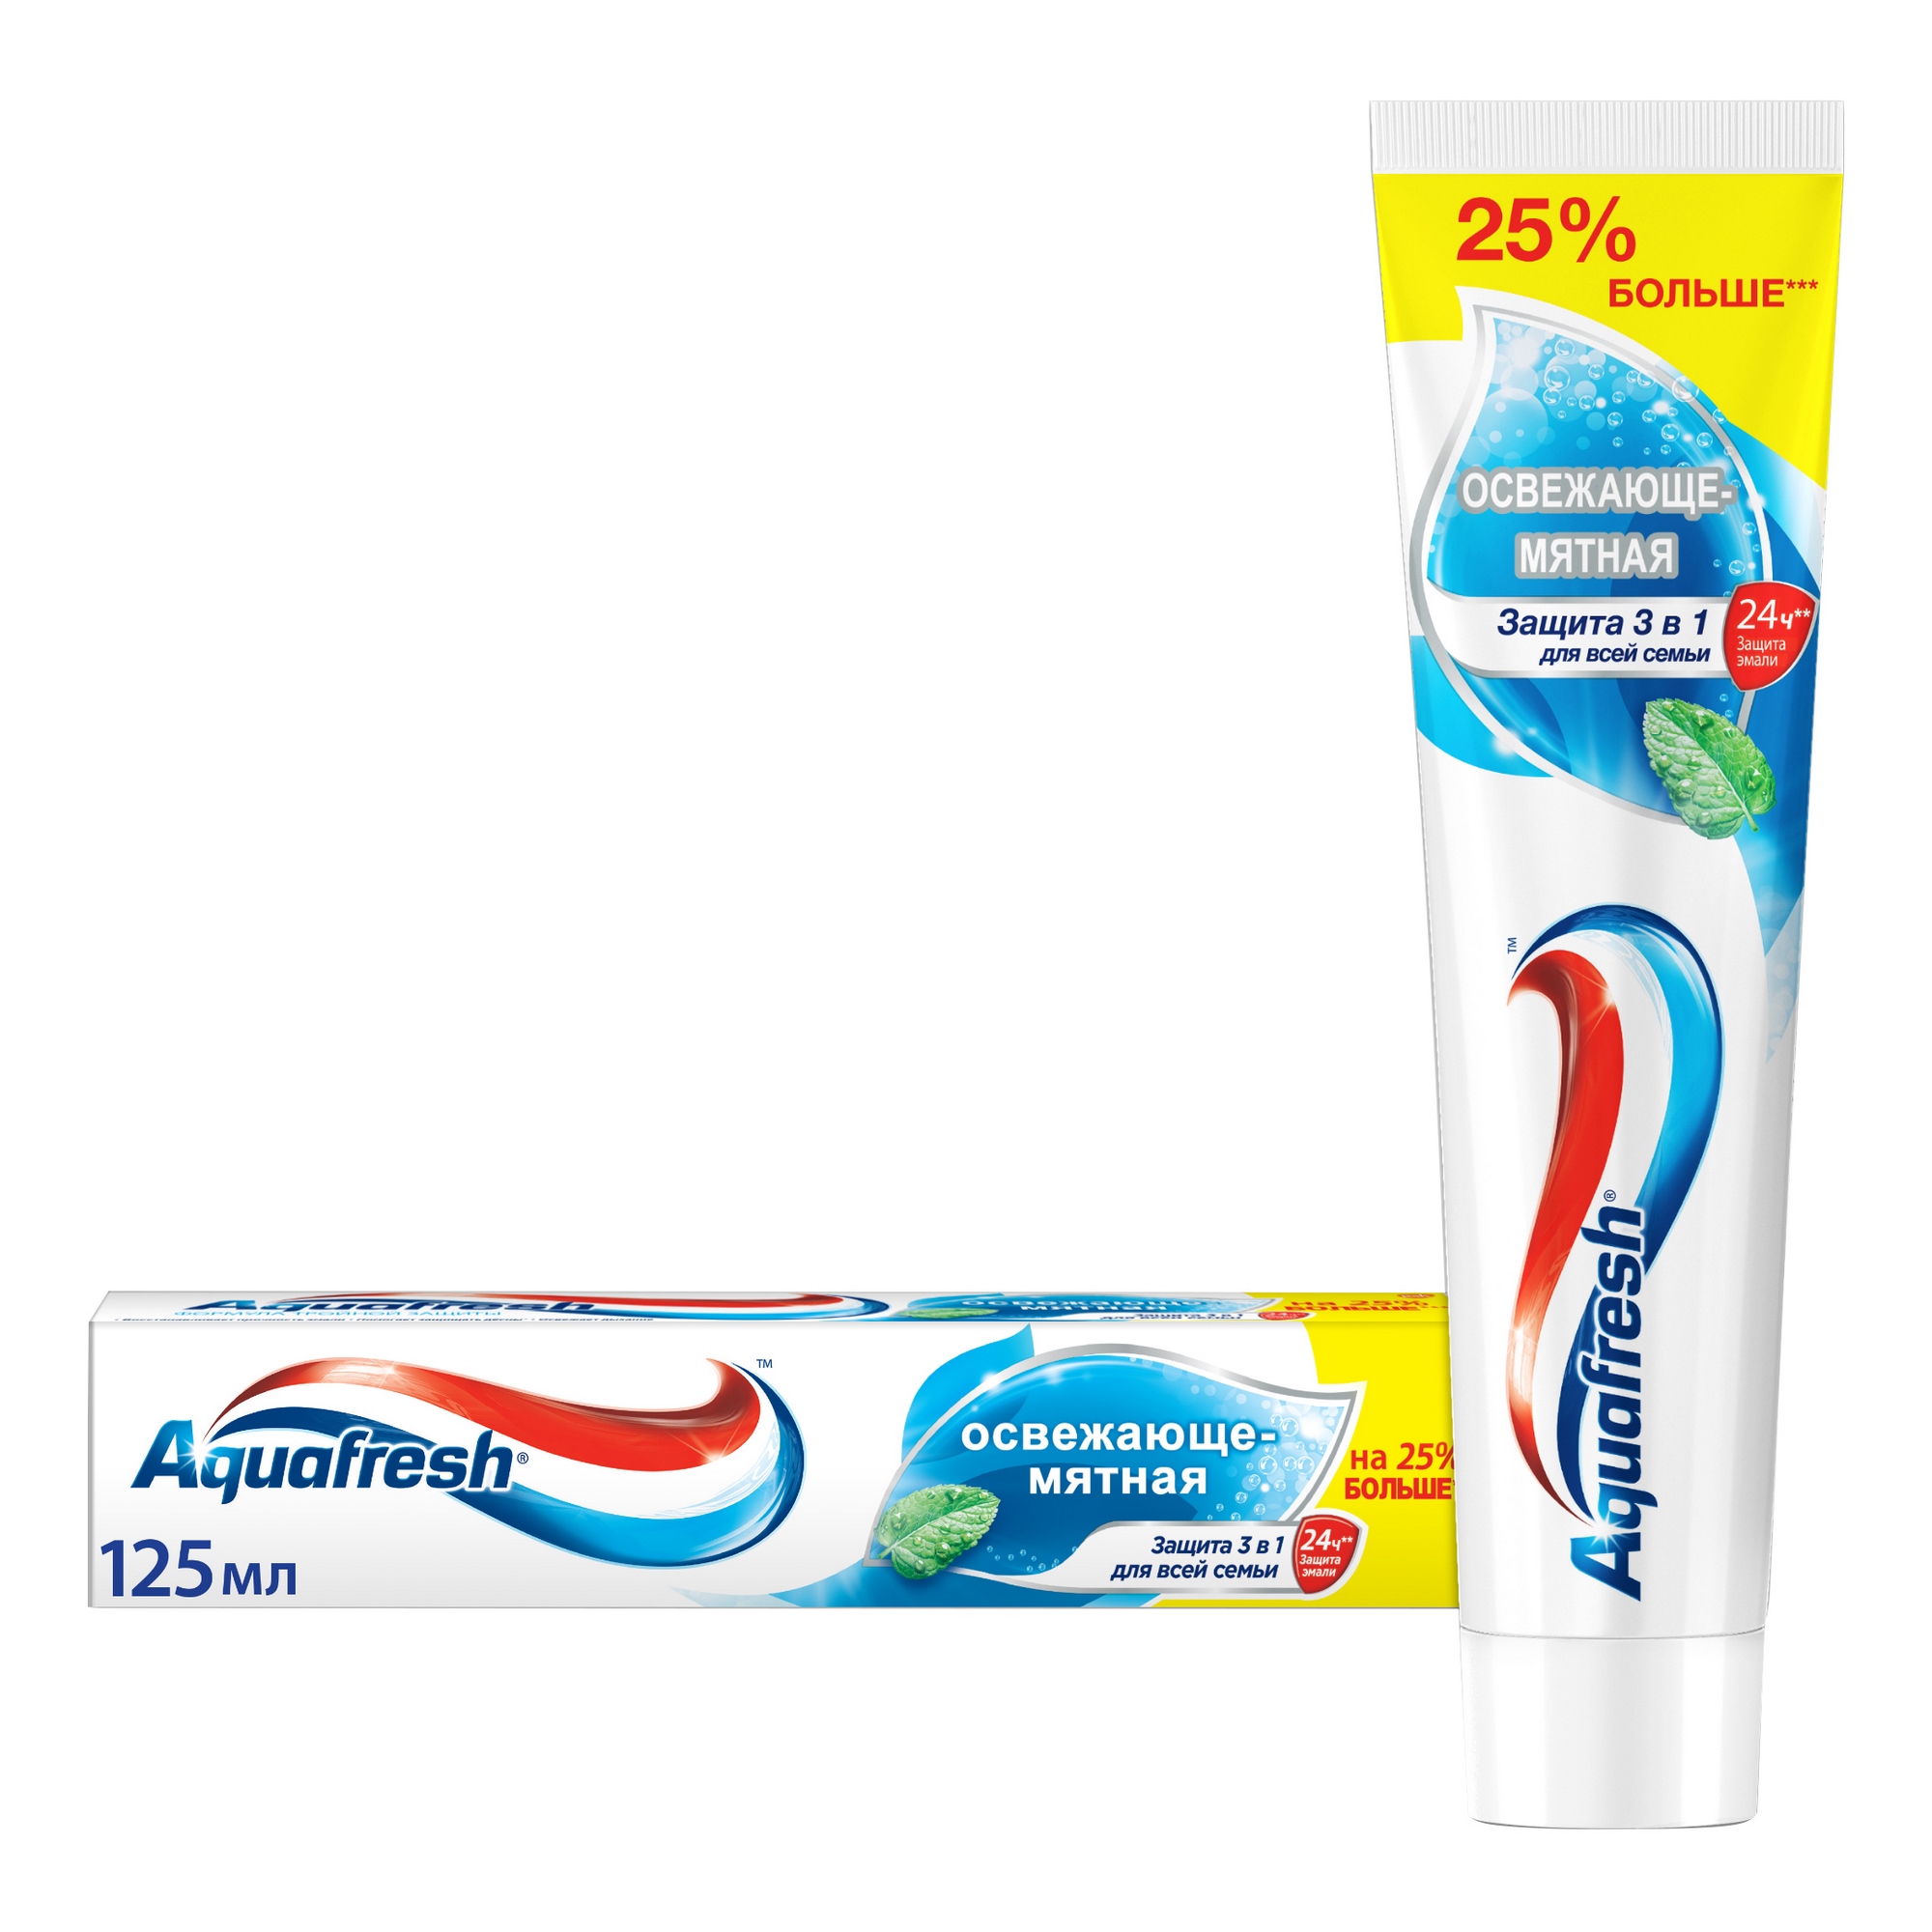 Зубная паста Aquafresh Освежающе-мятная 125 мл зубная паста aquafresh активное отбеливание 100 мл